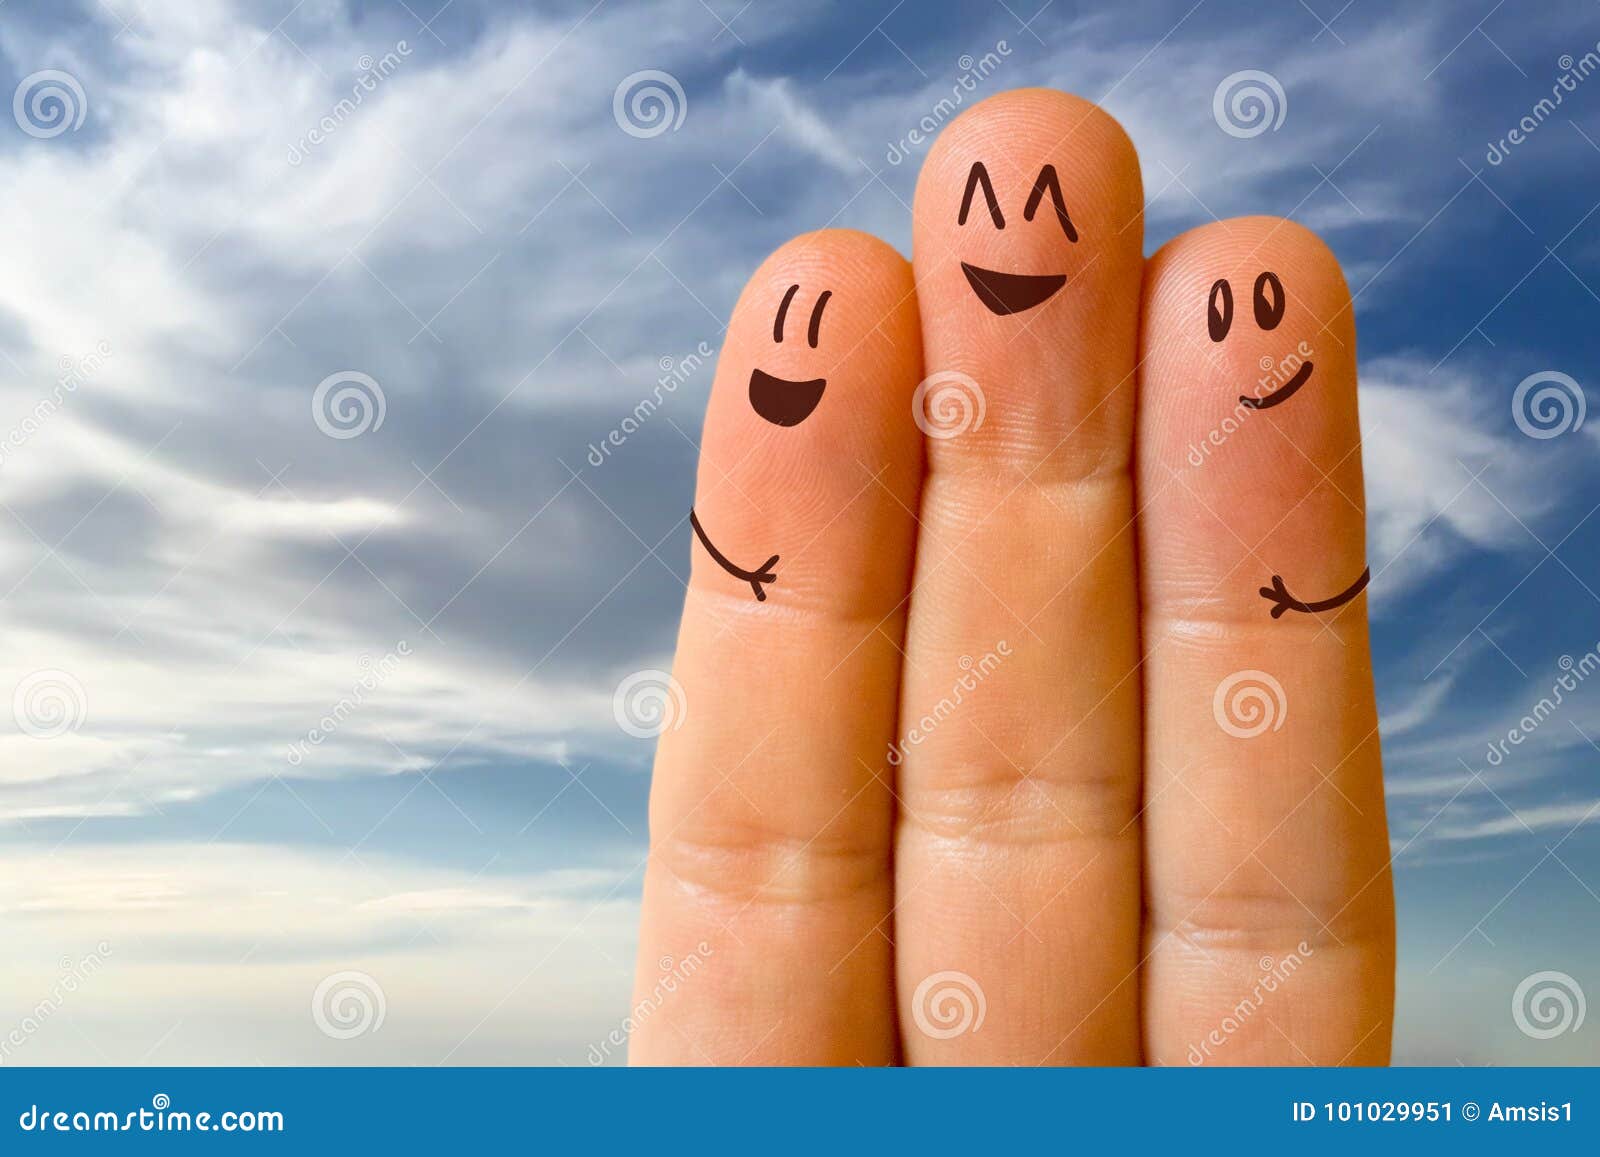 three friends fingers